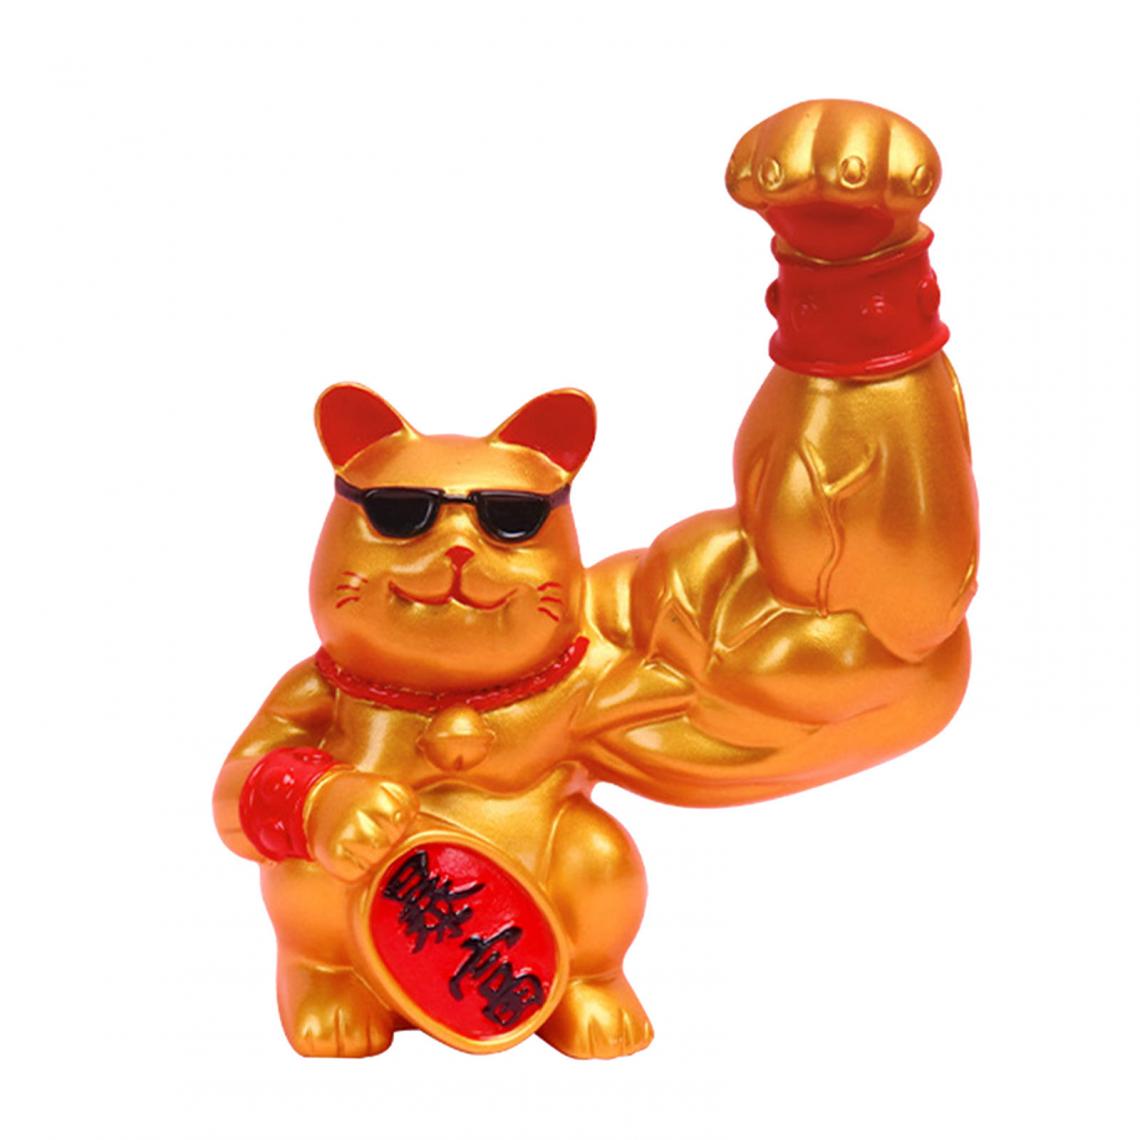 marque generique - Figurine de chat chanceux - Statues